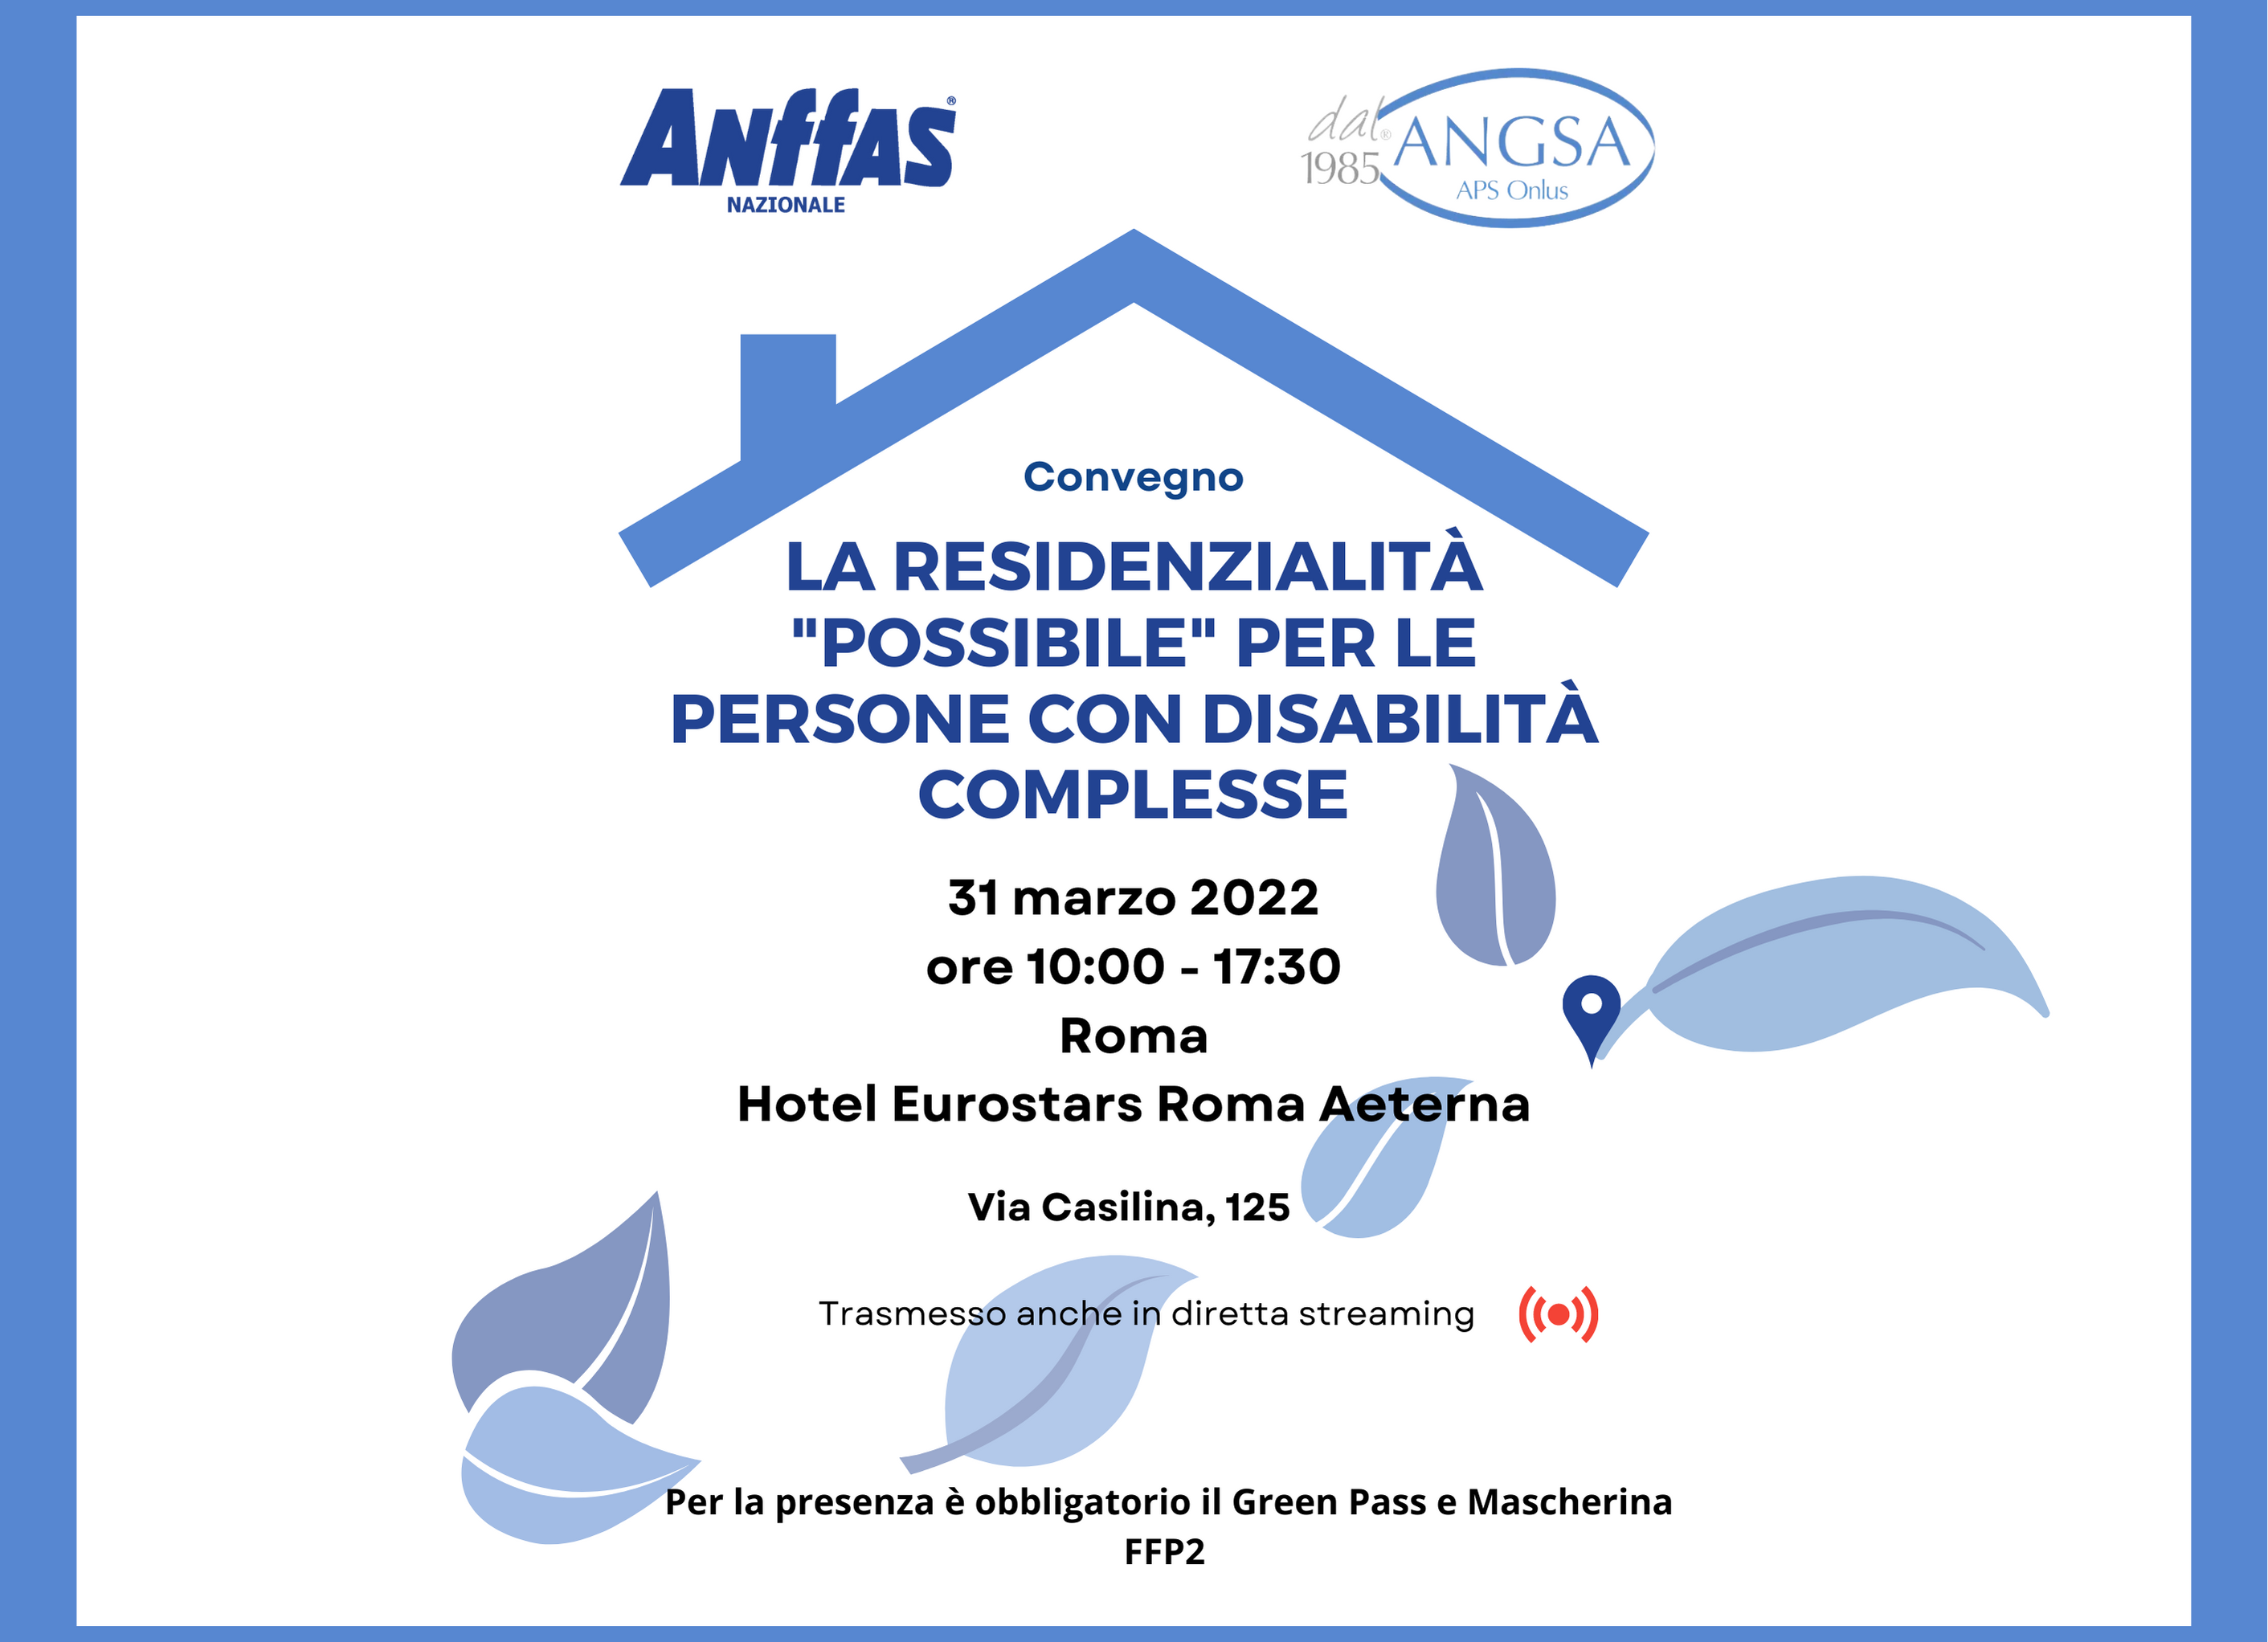 Convegno Anffas/Angsa: La residenzialità “possibile” per le persone con disabilità complesse